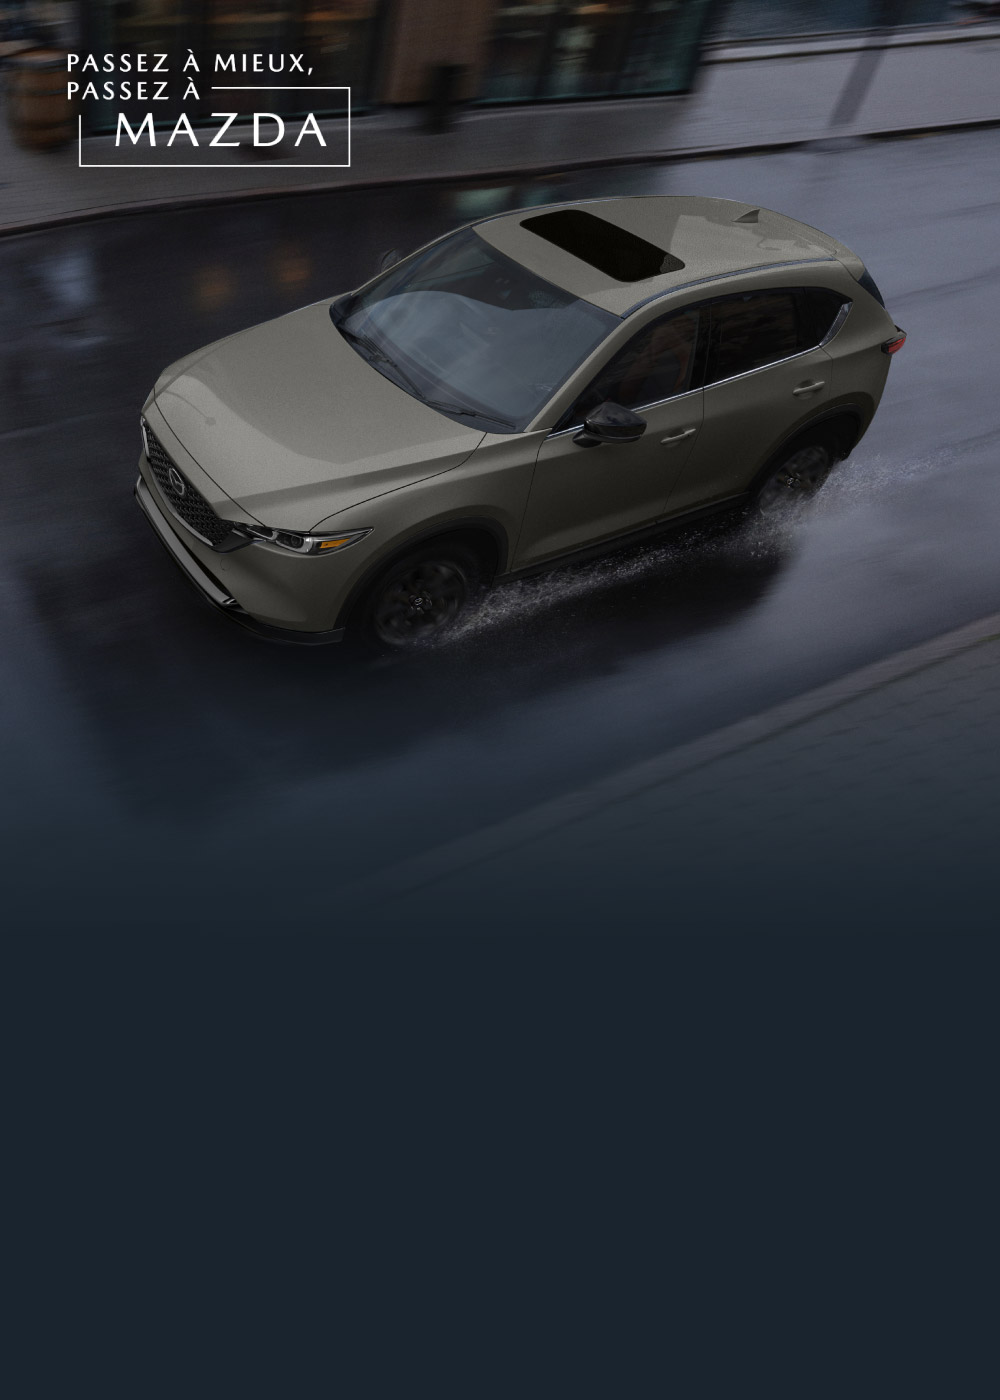 Mazda - Thématique